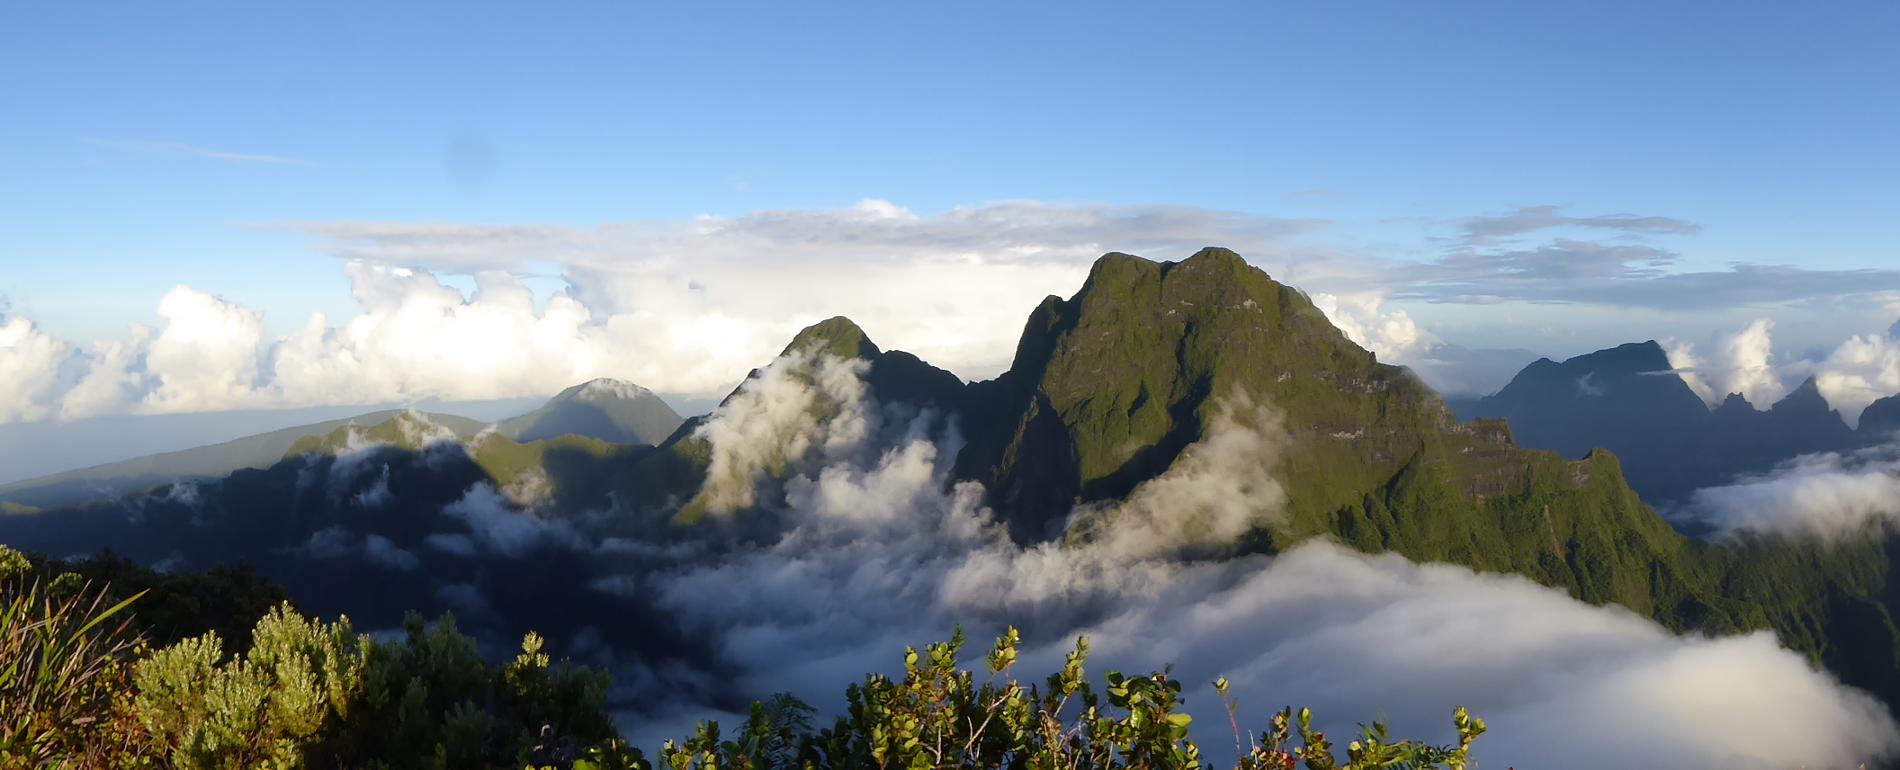 Vue sur les monts Pihaiateta, Pito Hiti et Orohena, Tahiti, Société © Jean-Yves H. Meyer - Délégation à la recherche de la Polynésie française